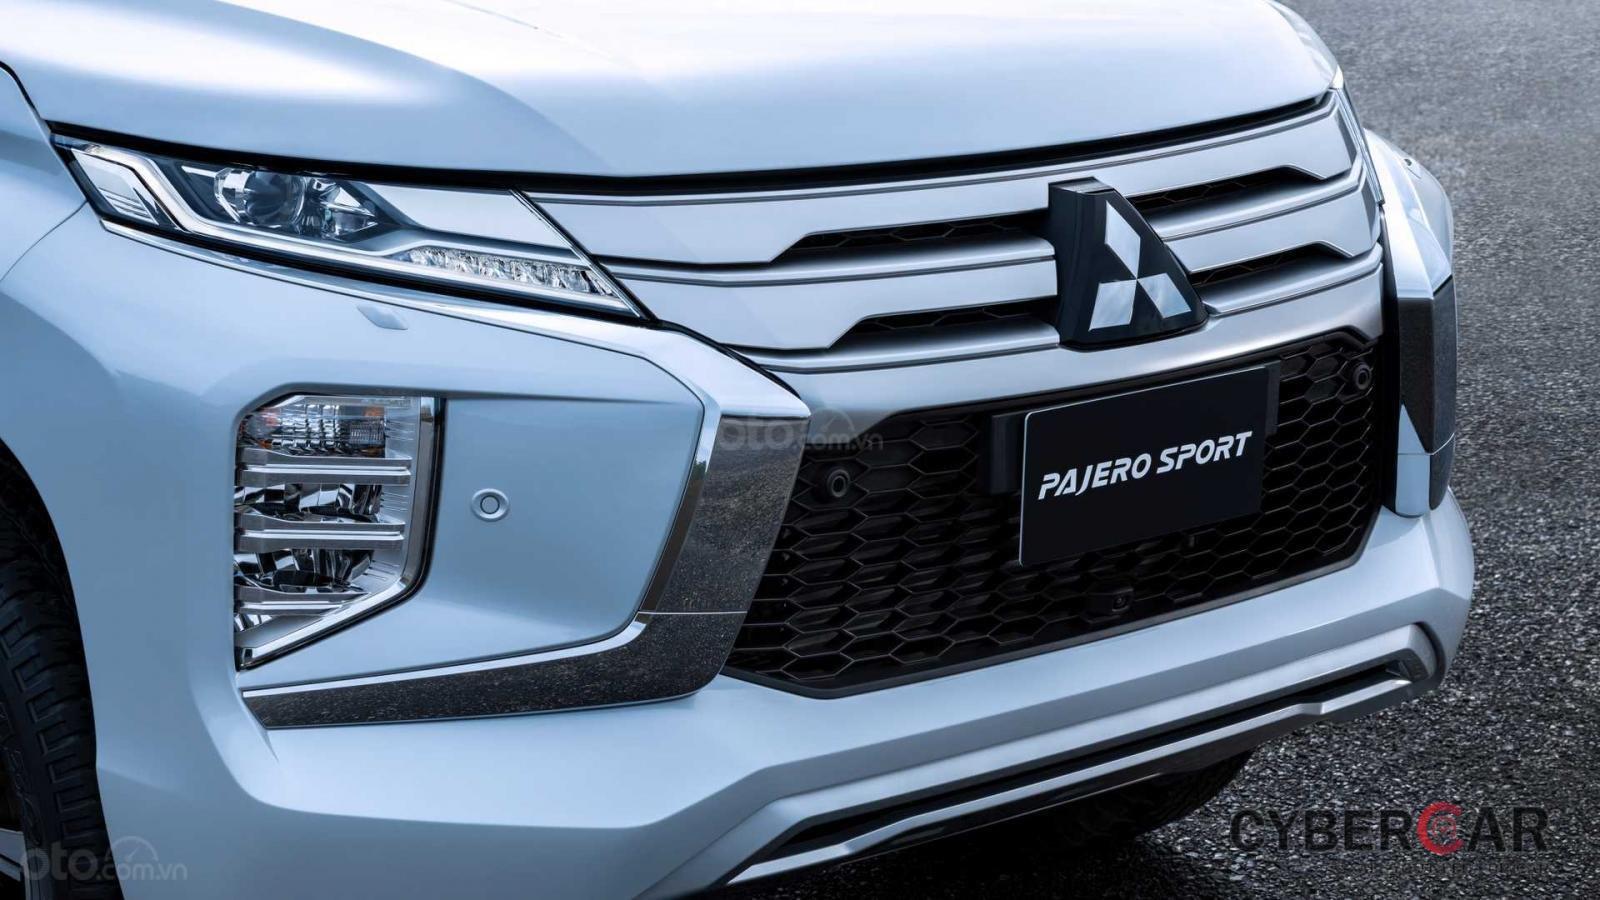 Nhìn nhanh điểm mới của Mitsubishi Pajero Sport 2020 so với bản cũ qua ảnh a3